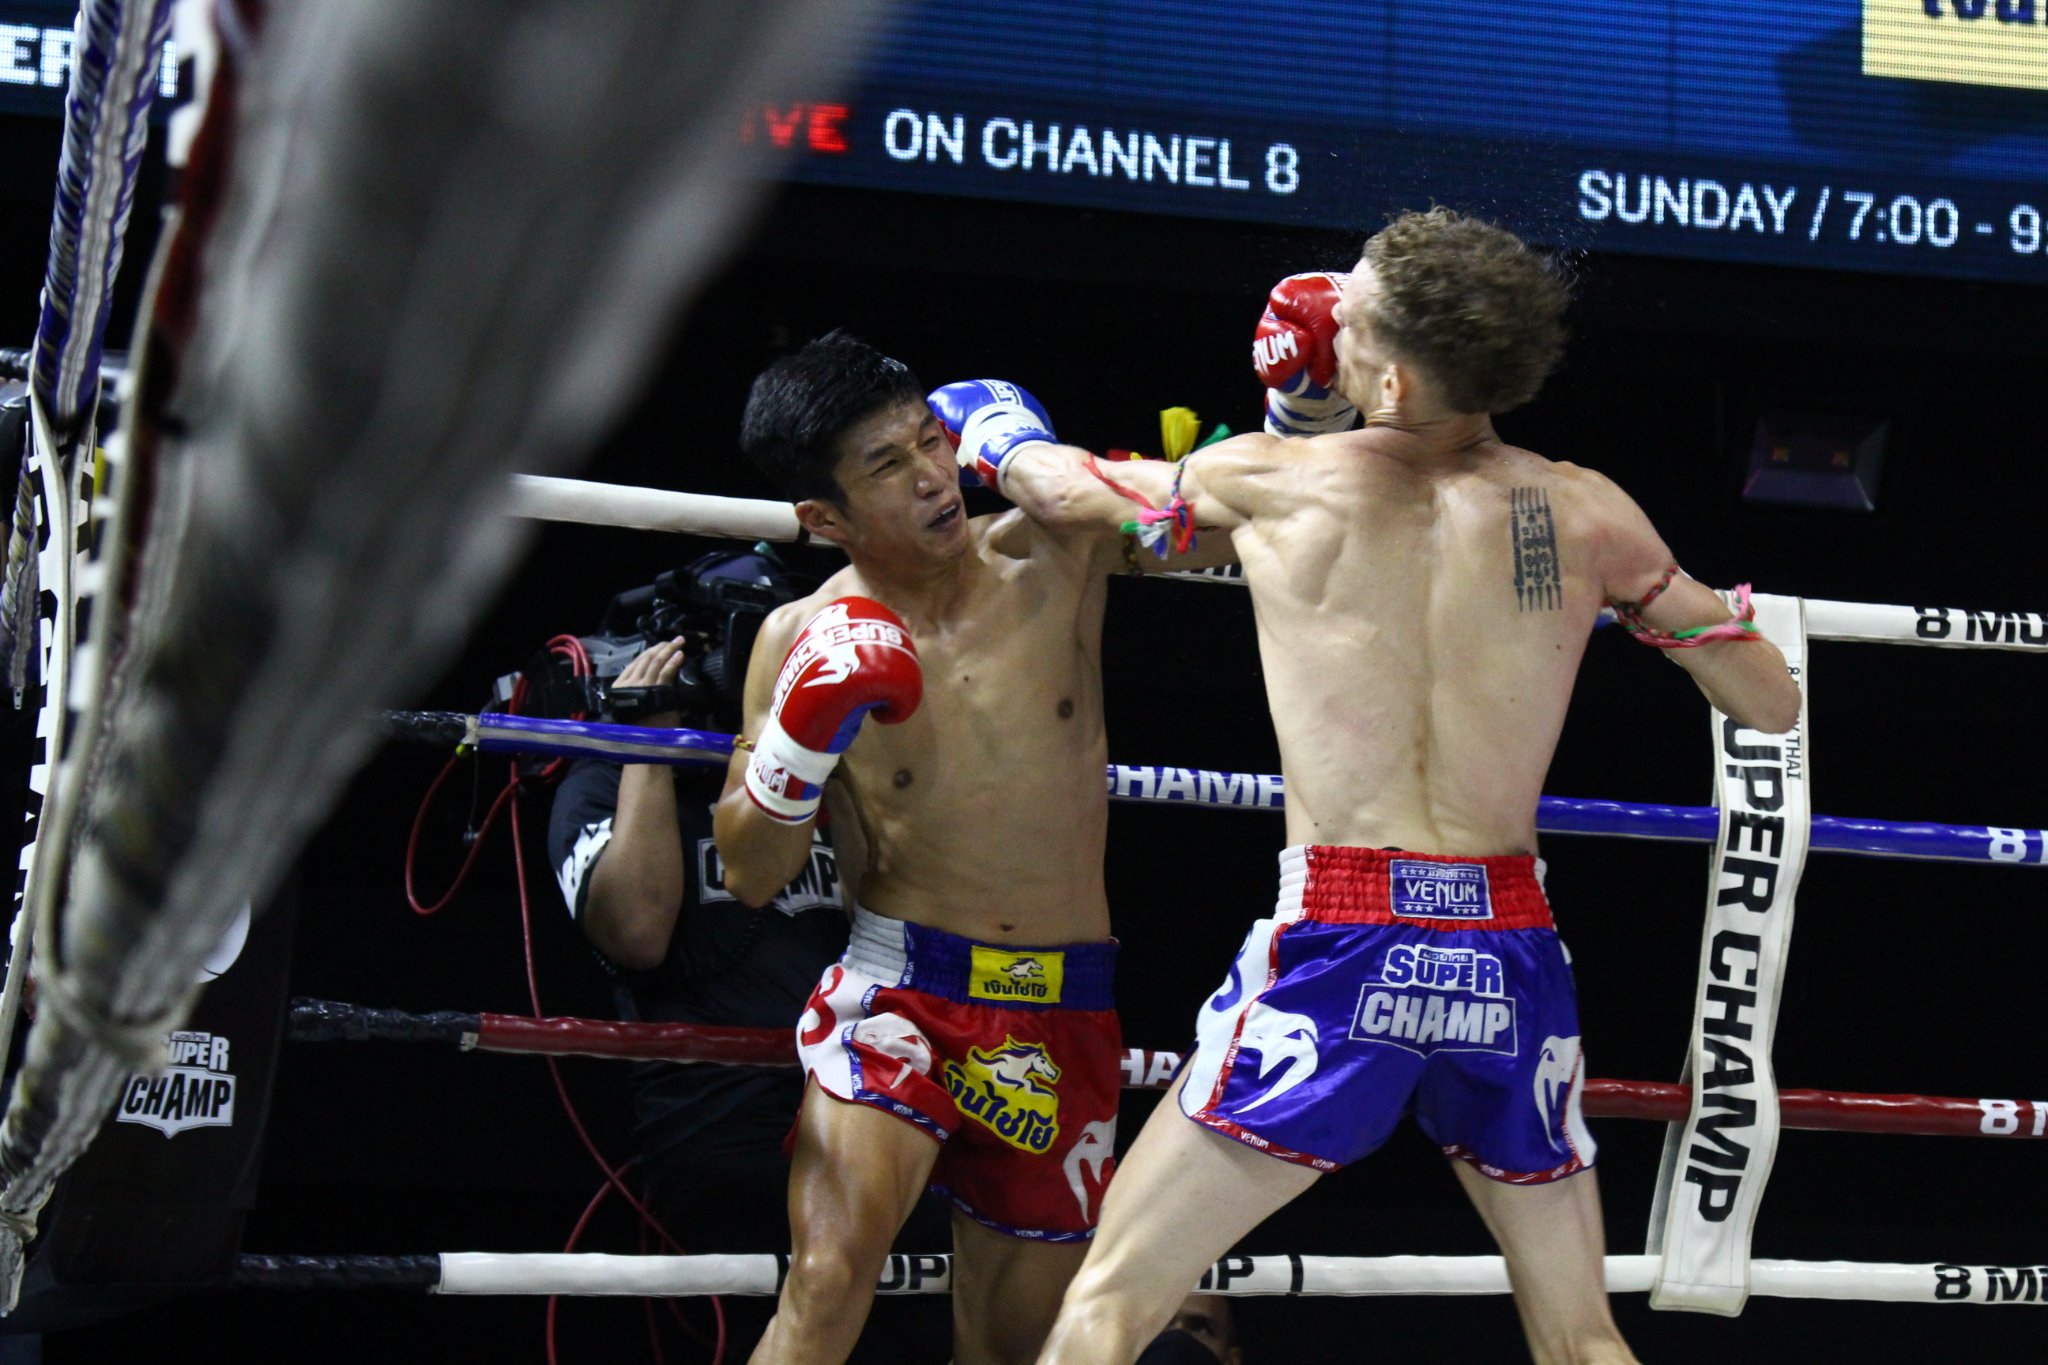 Trương Cao Minh Phát đấu 2 trận Muay trong 1 đêm ở Thái Lan, thắng KO cả 2 - Ảnh 4